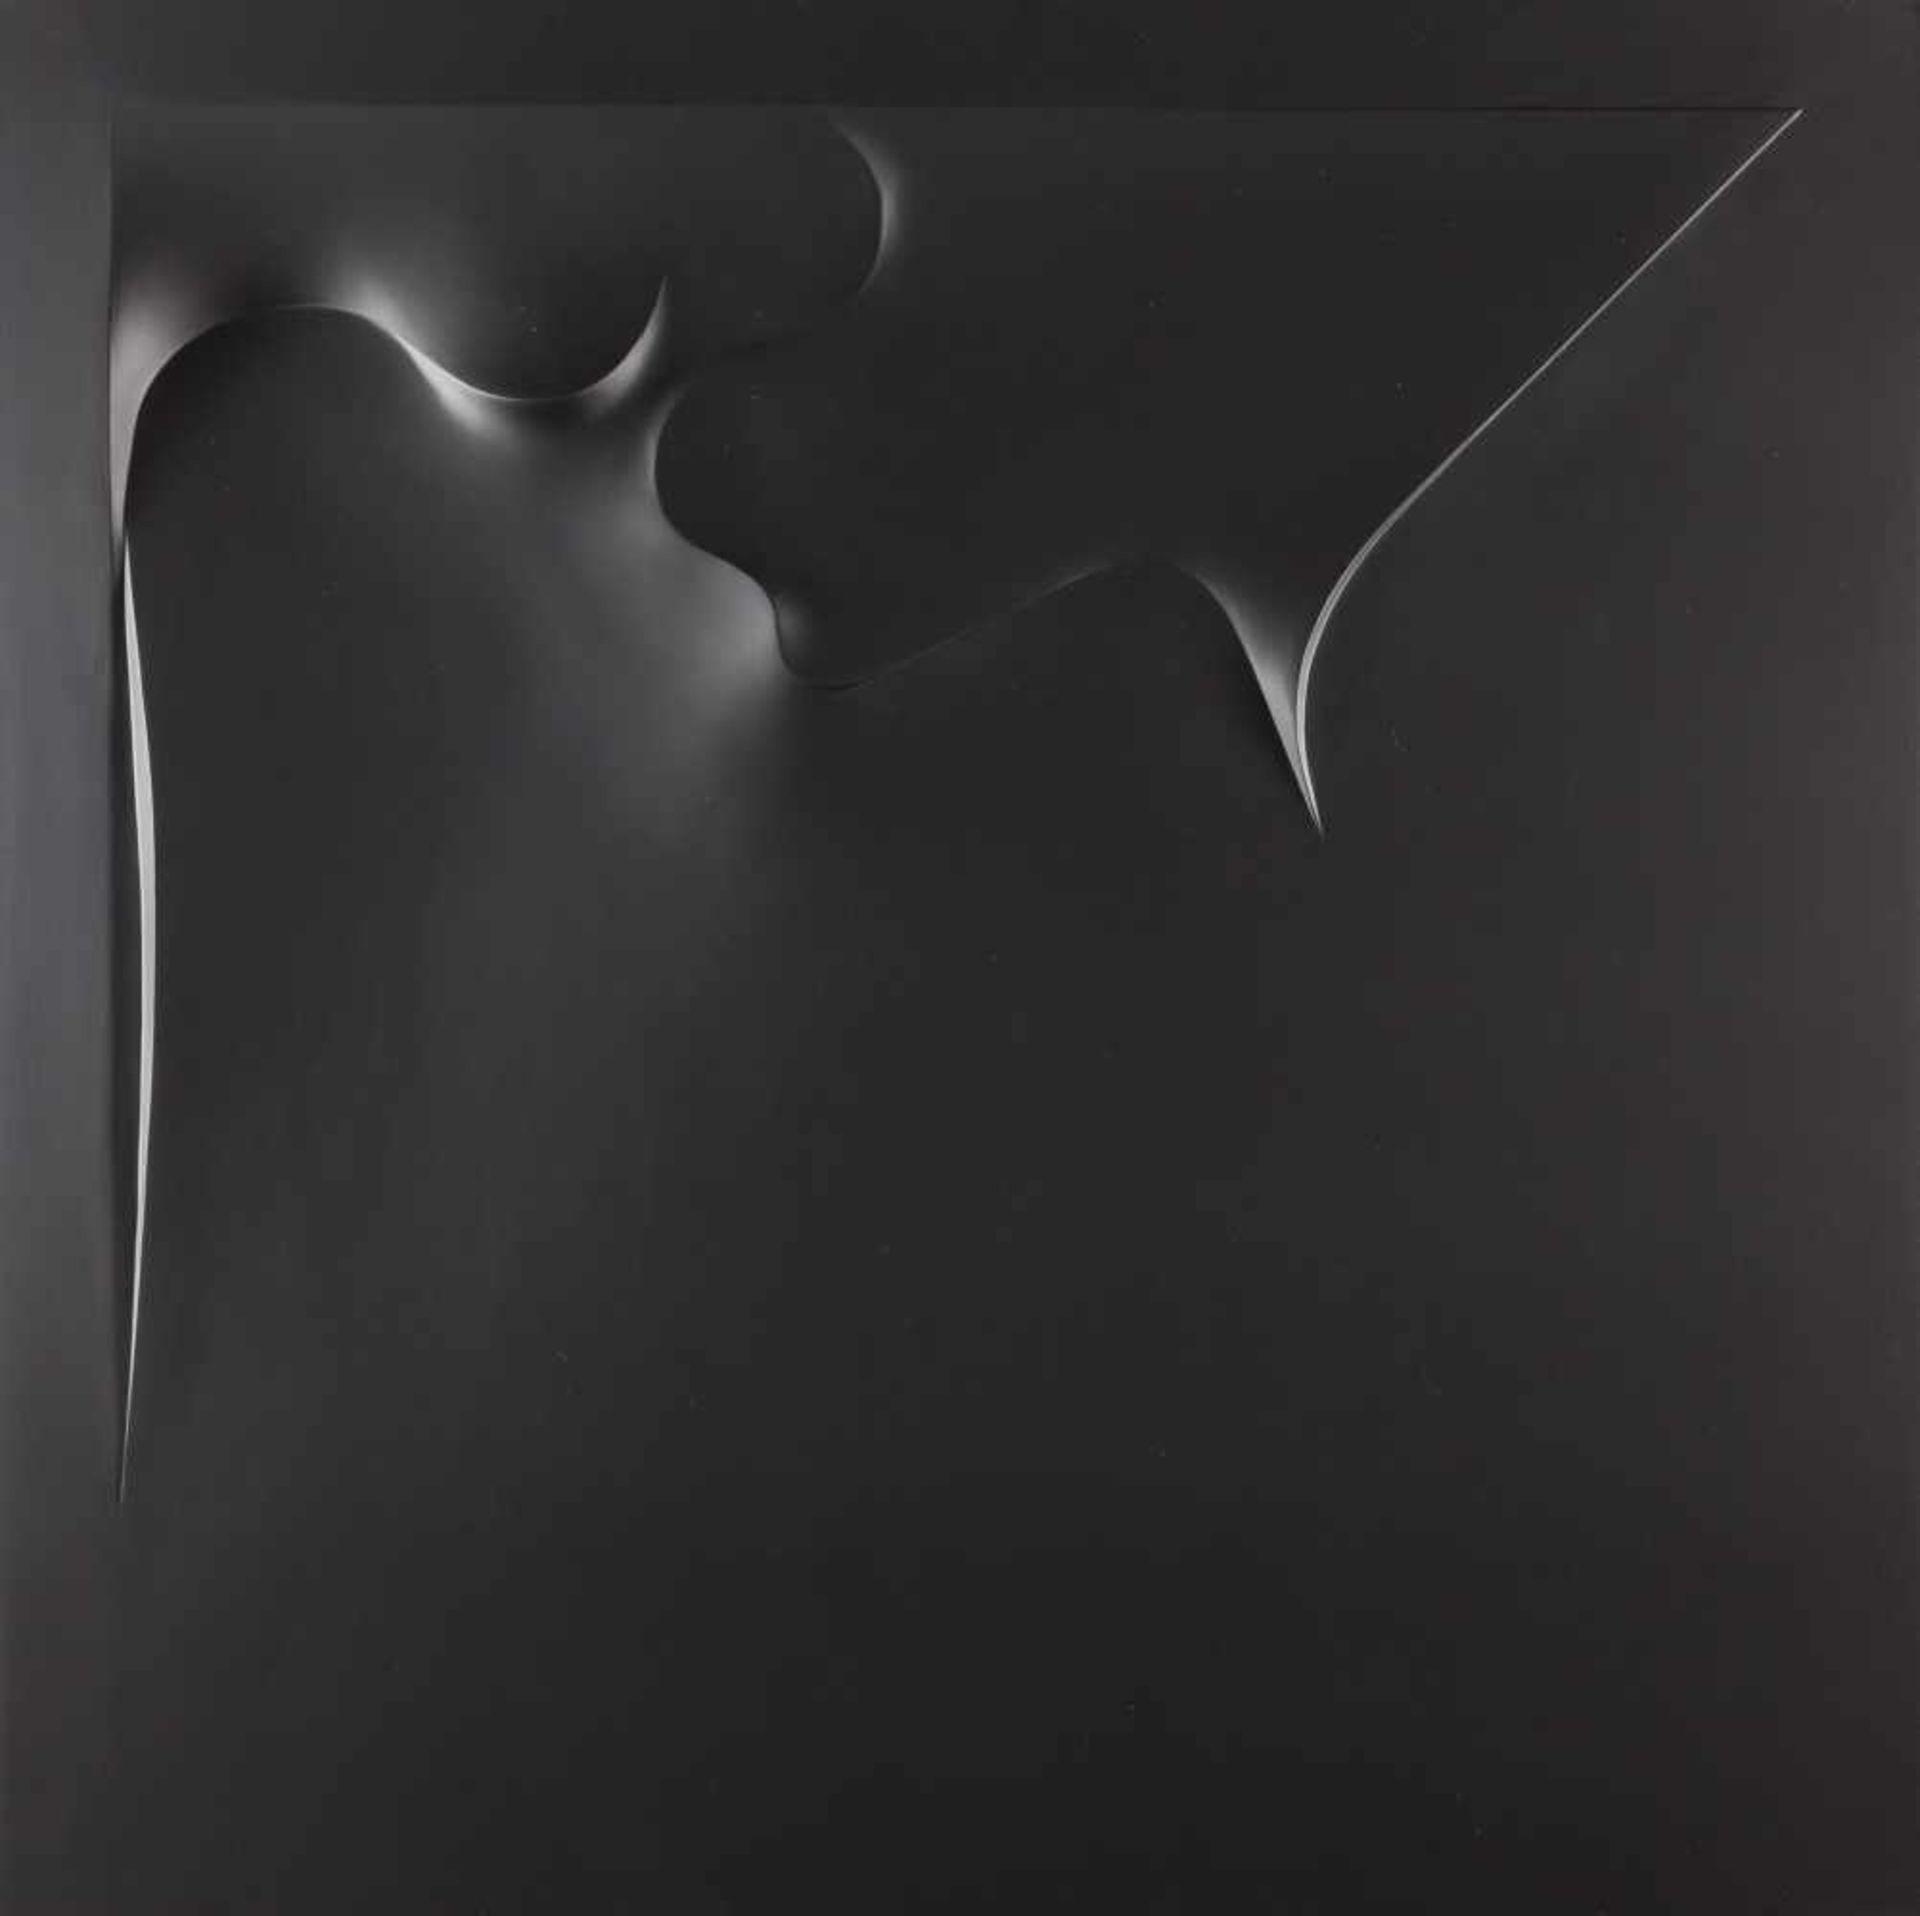 HORST KUHNERT - Ohne Titel Polyesterrelief. 1976. Ca. 70 x 70 x 3 cm. Verso signiert, datiert und